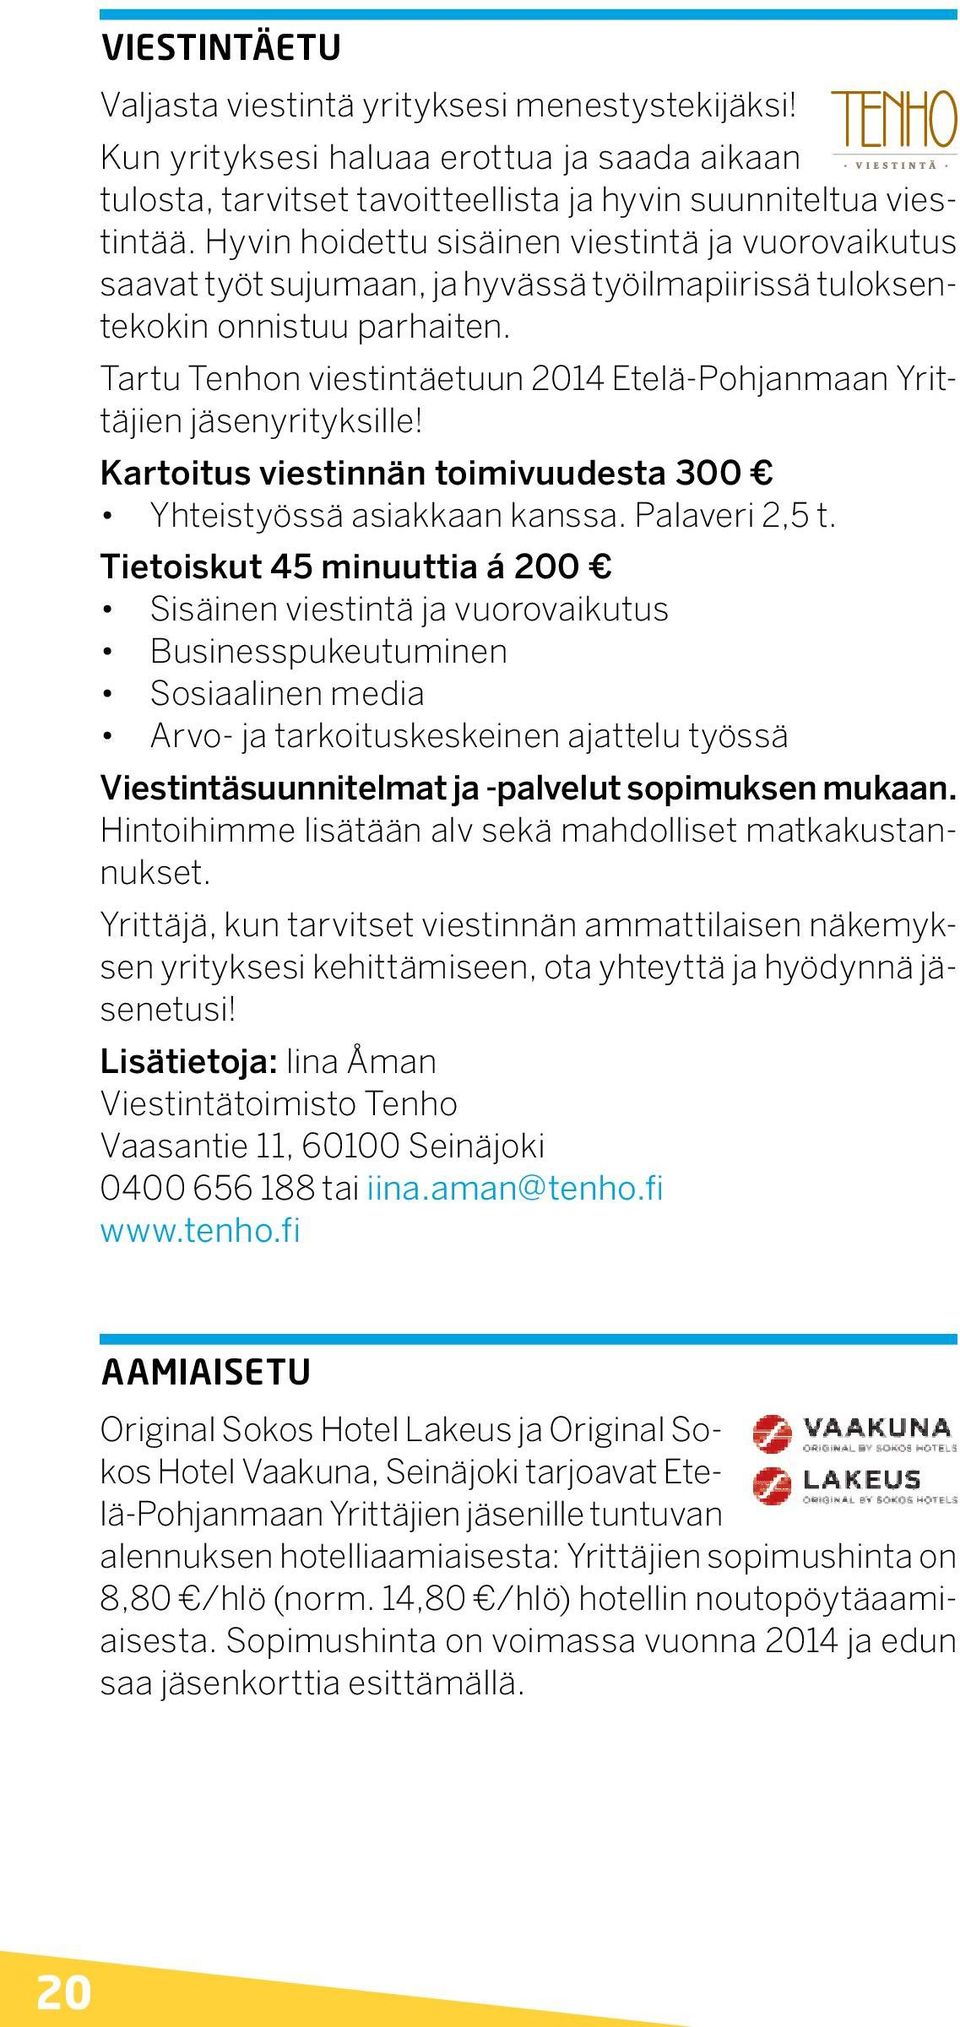 Tartu Tenhon viestintäetuun 2014 Etelä-Pohjanmaan Yrittäjien jäsenyrityksille! Kartoitus viestinnän toimivuudesta 300 Yhteistyössä asiakkaan kanssa. Palaveri 2,5 t.